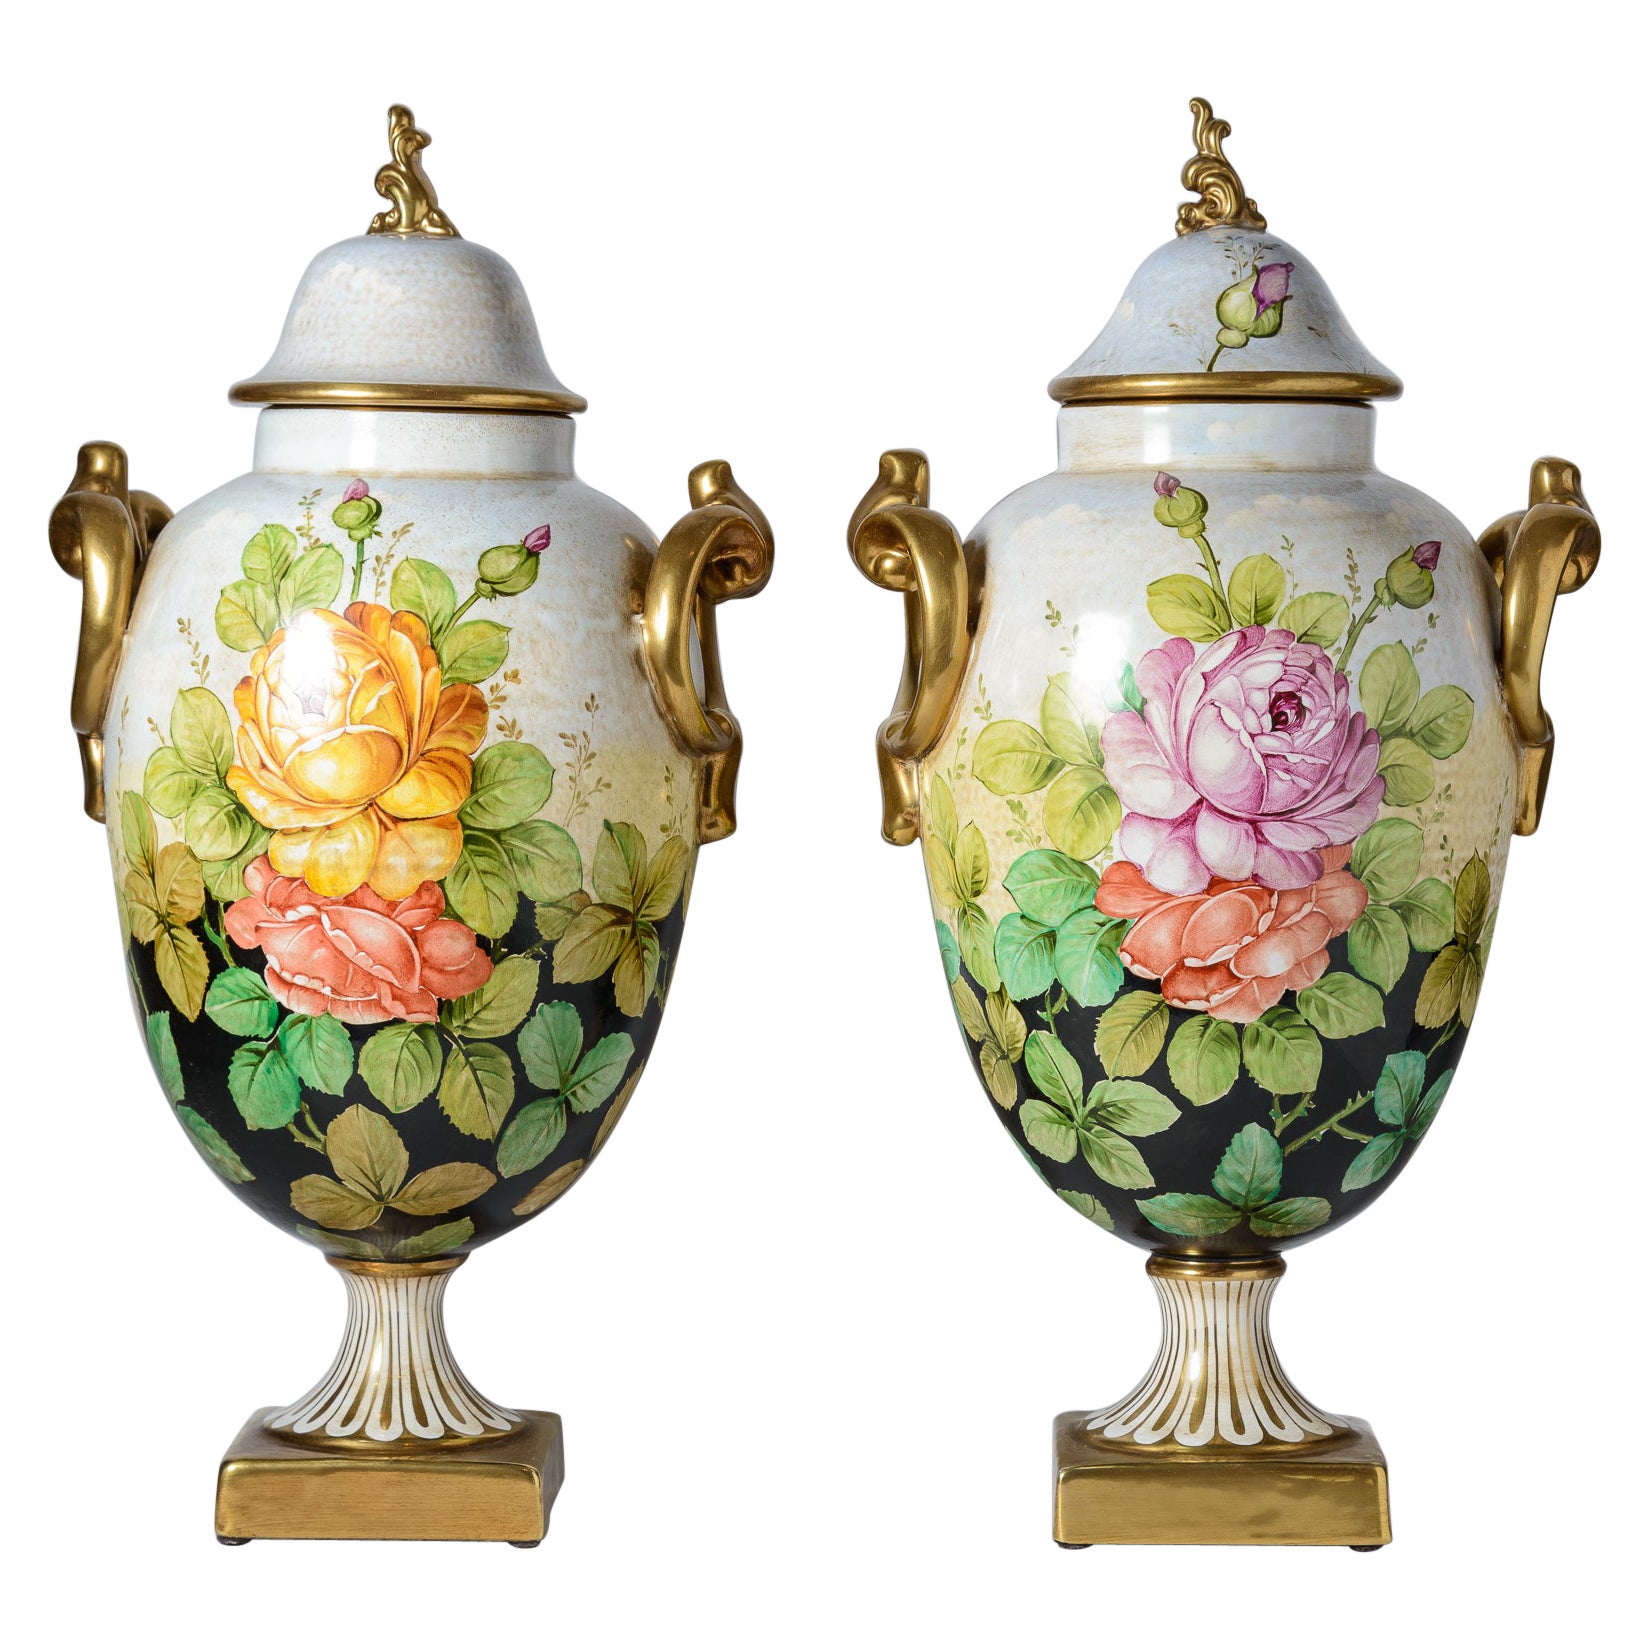 Ein Paar sehr hohe, handbemalte italienische Vintage-Keramik-Urnen, vom Künstler signiert 